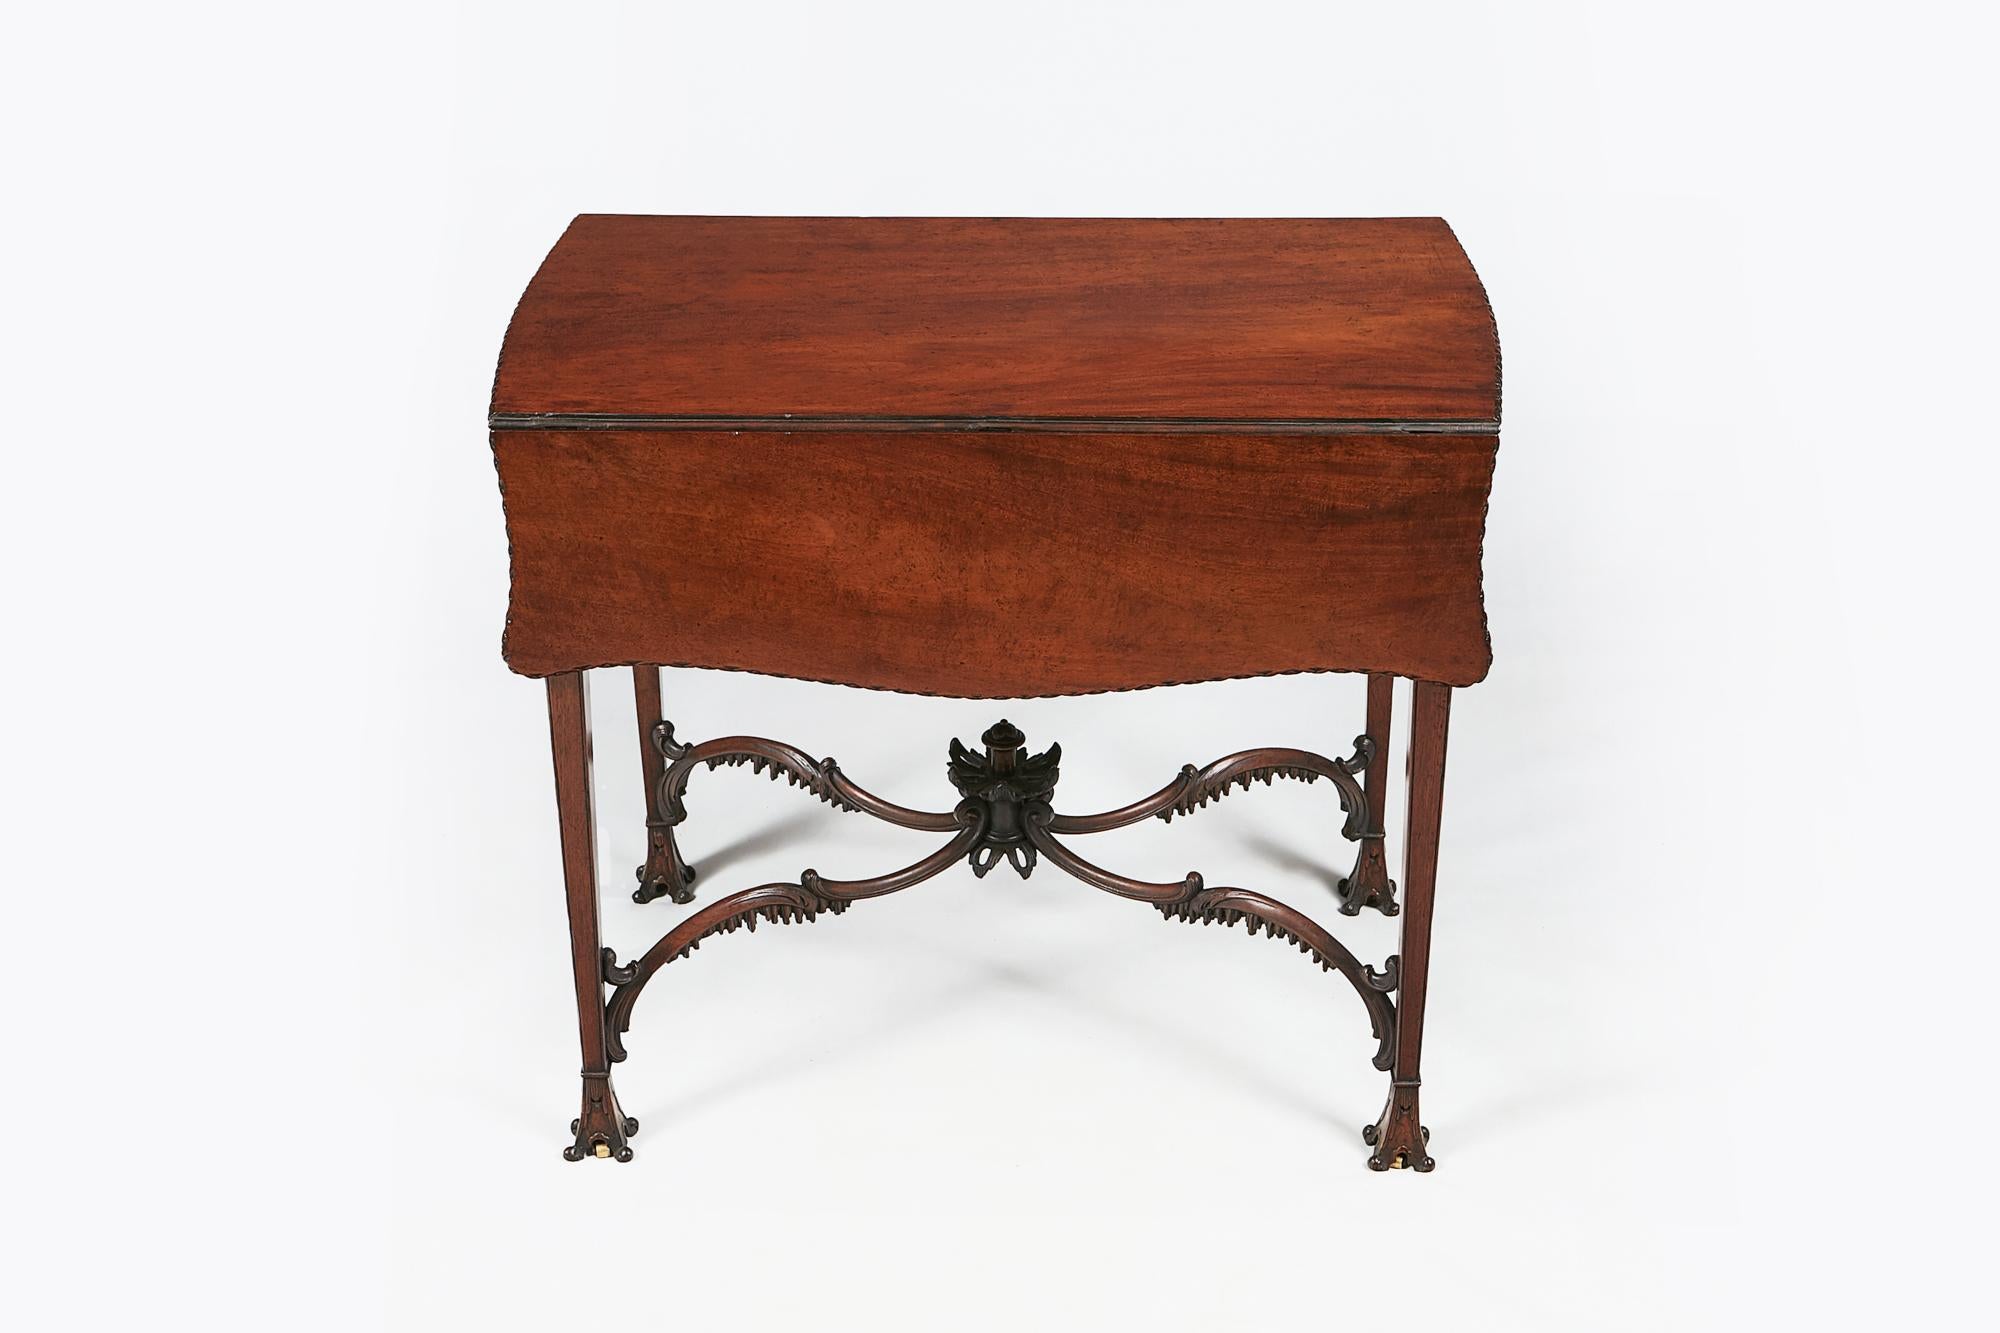 18. Jahrhundert Mahagoni Pembroke Tisch im Stil von Chippendale, die geformte Schmetterling oben mit Bund geformten Kanten über einzelne Schublade mit Messing zieht, geschnitzt Glockenblume und Blattmotiv über geformte Fries auf schlanke verjüngte